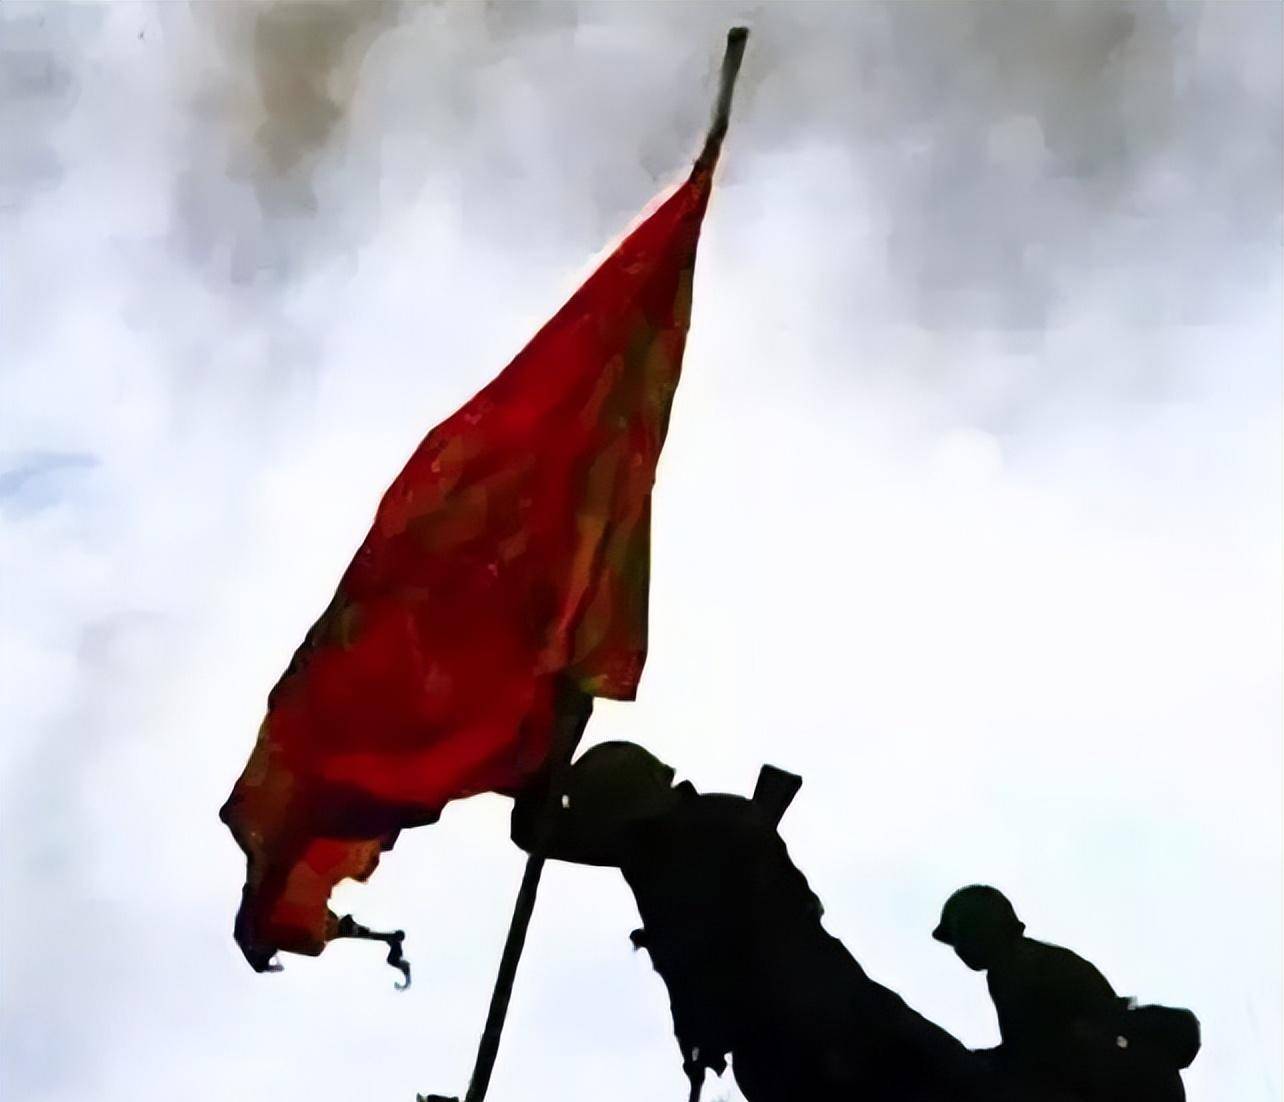 中国最悲壮的插旗照《老山插旗》,旗手没有牺牲,现在是一名安保